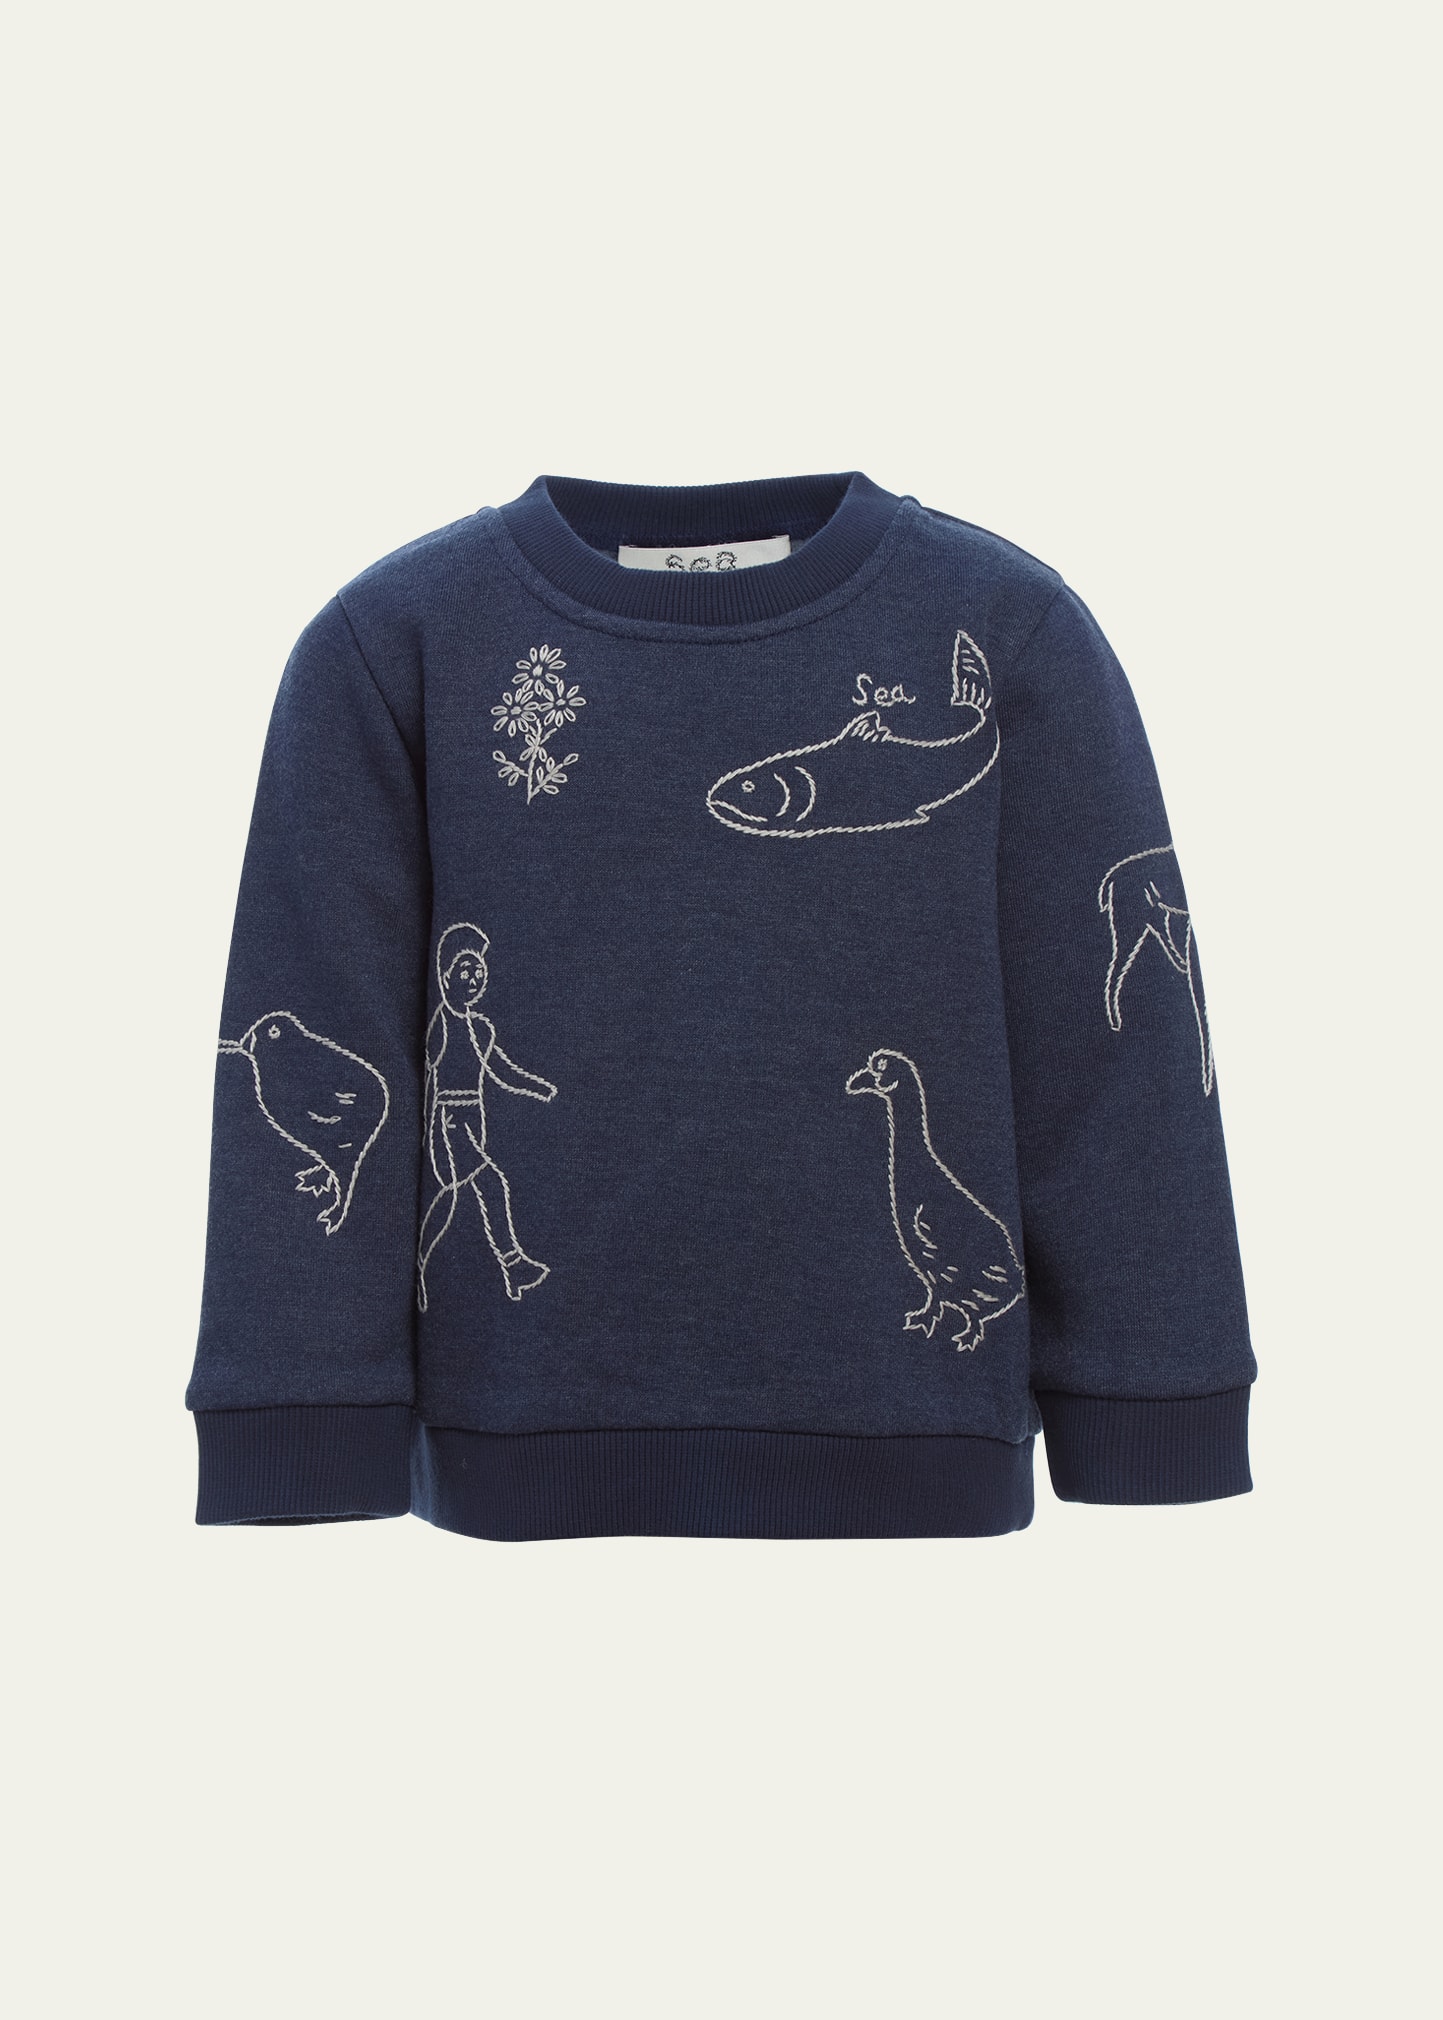 Girl's Embroidered Sweatshirt, Size 2-14